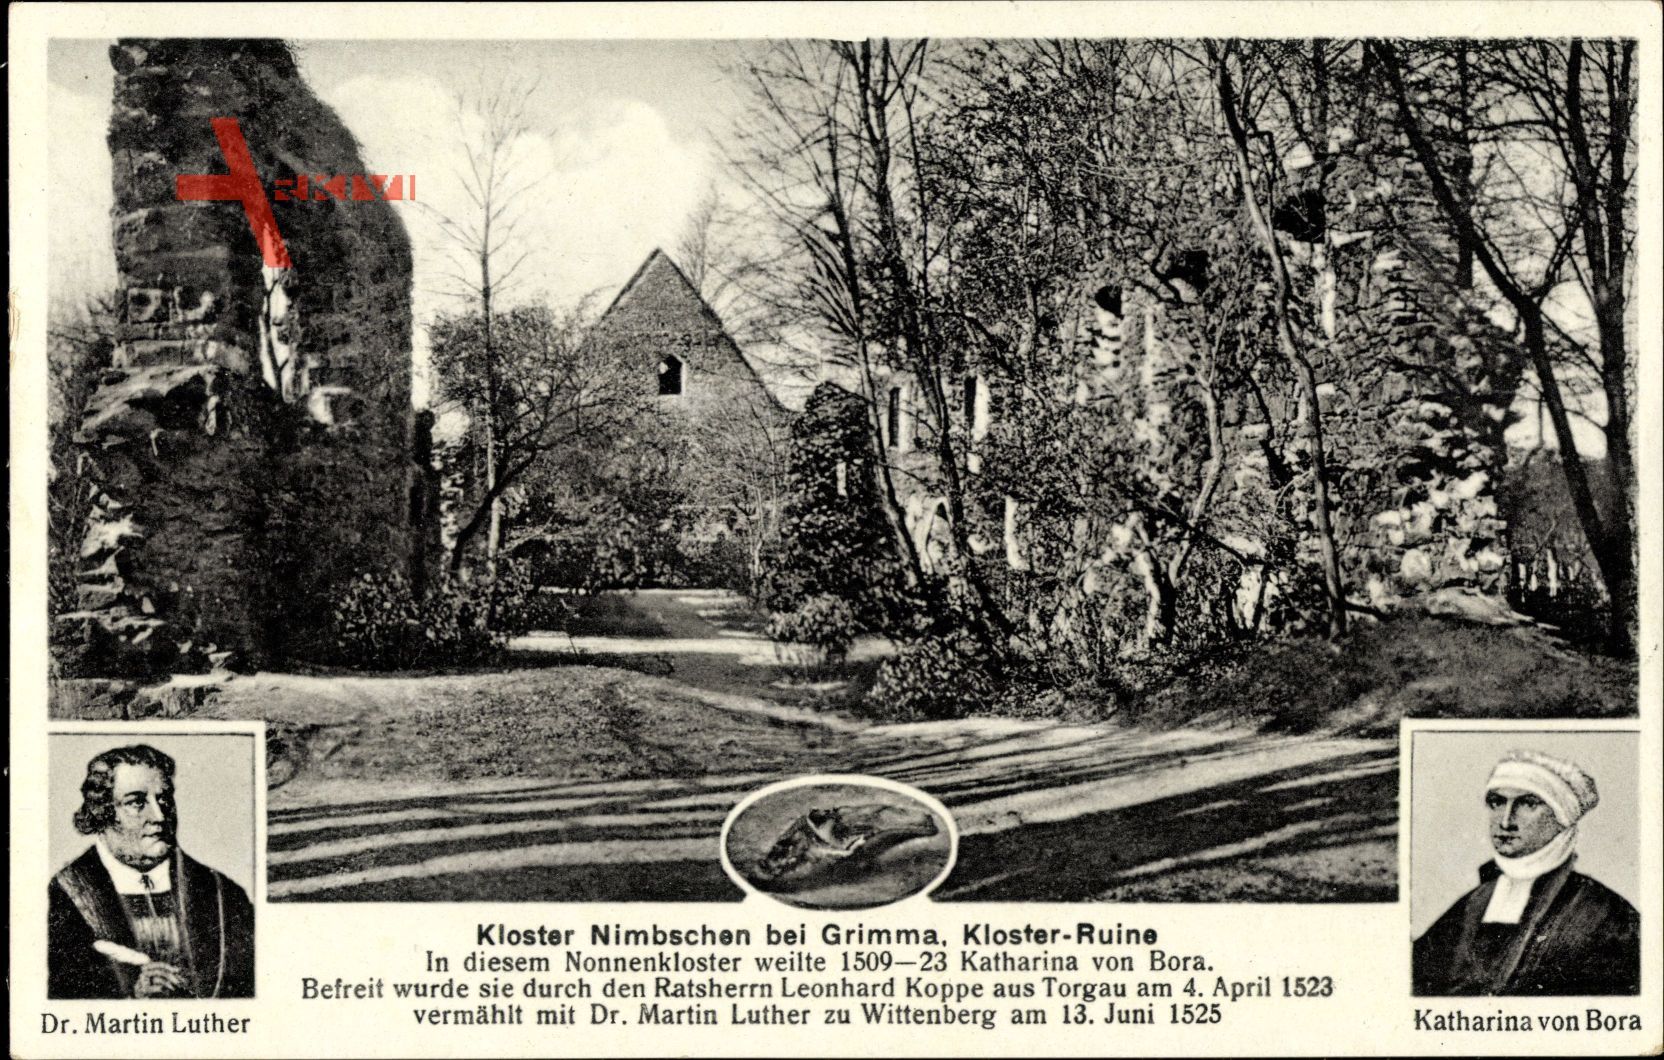 Nimbschen Böhlen Grimma in Sachsen, Katharina v. Bora, Luther, Kloster